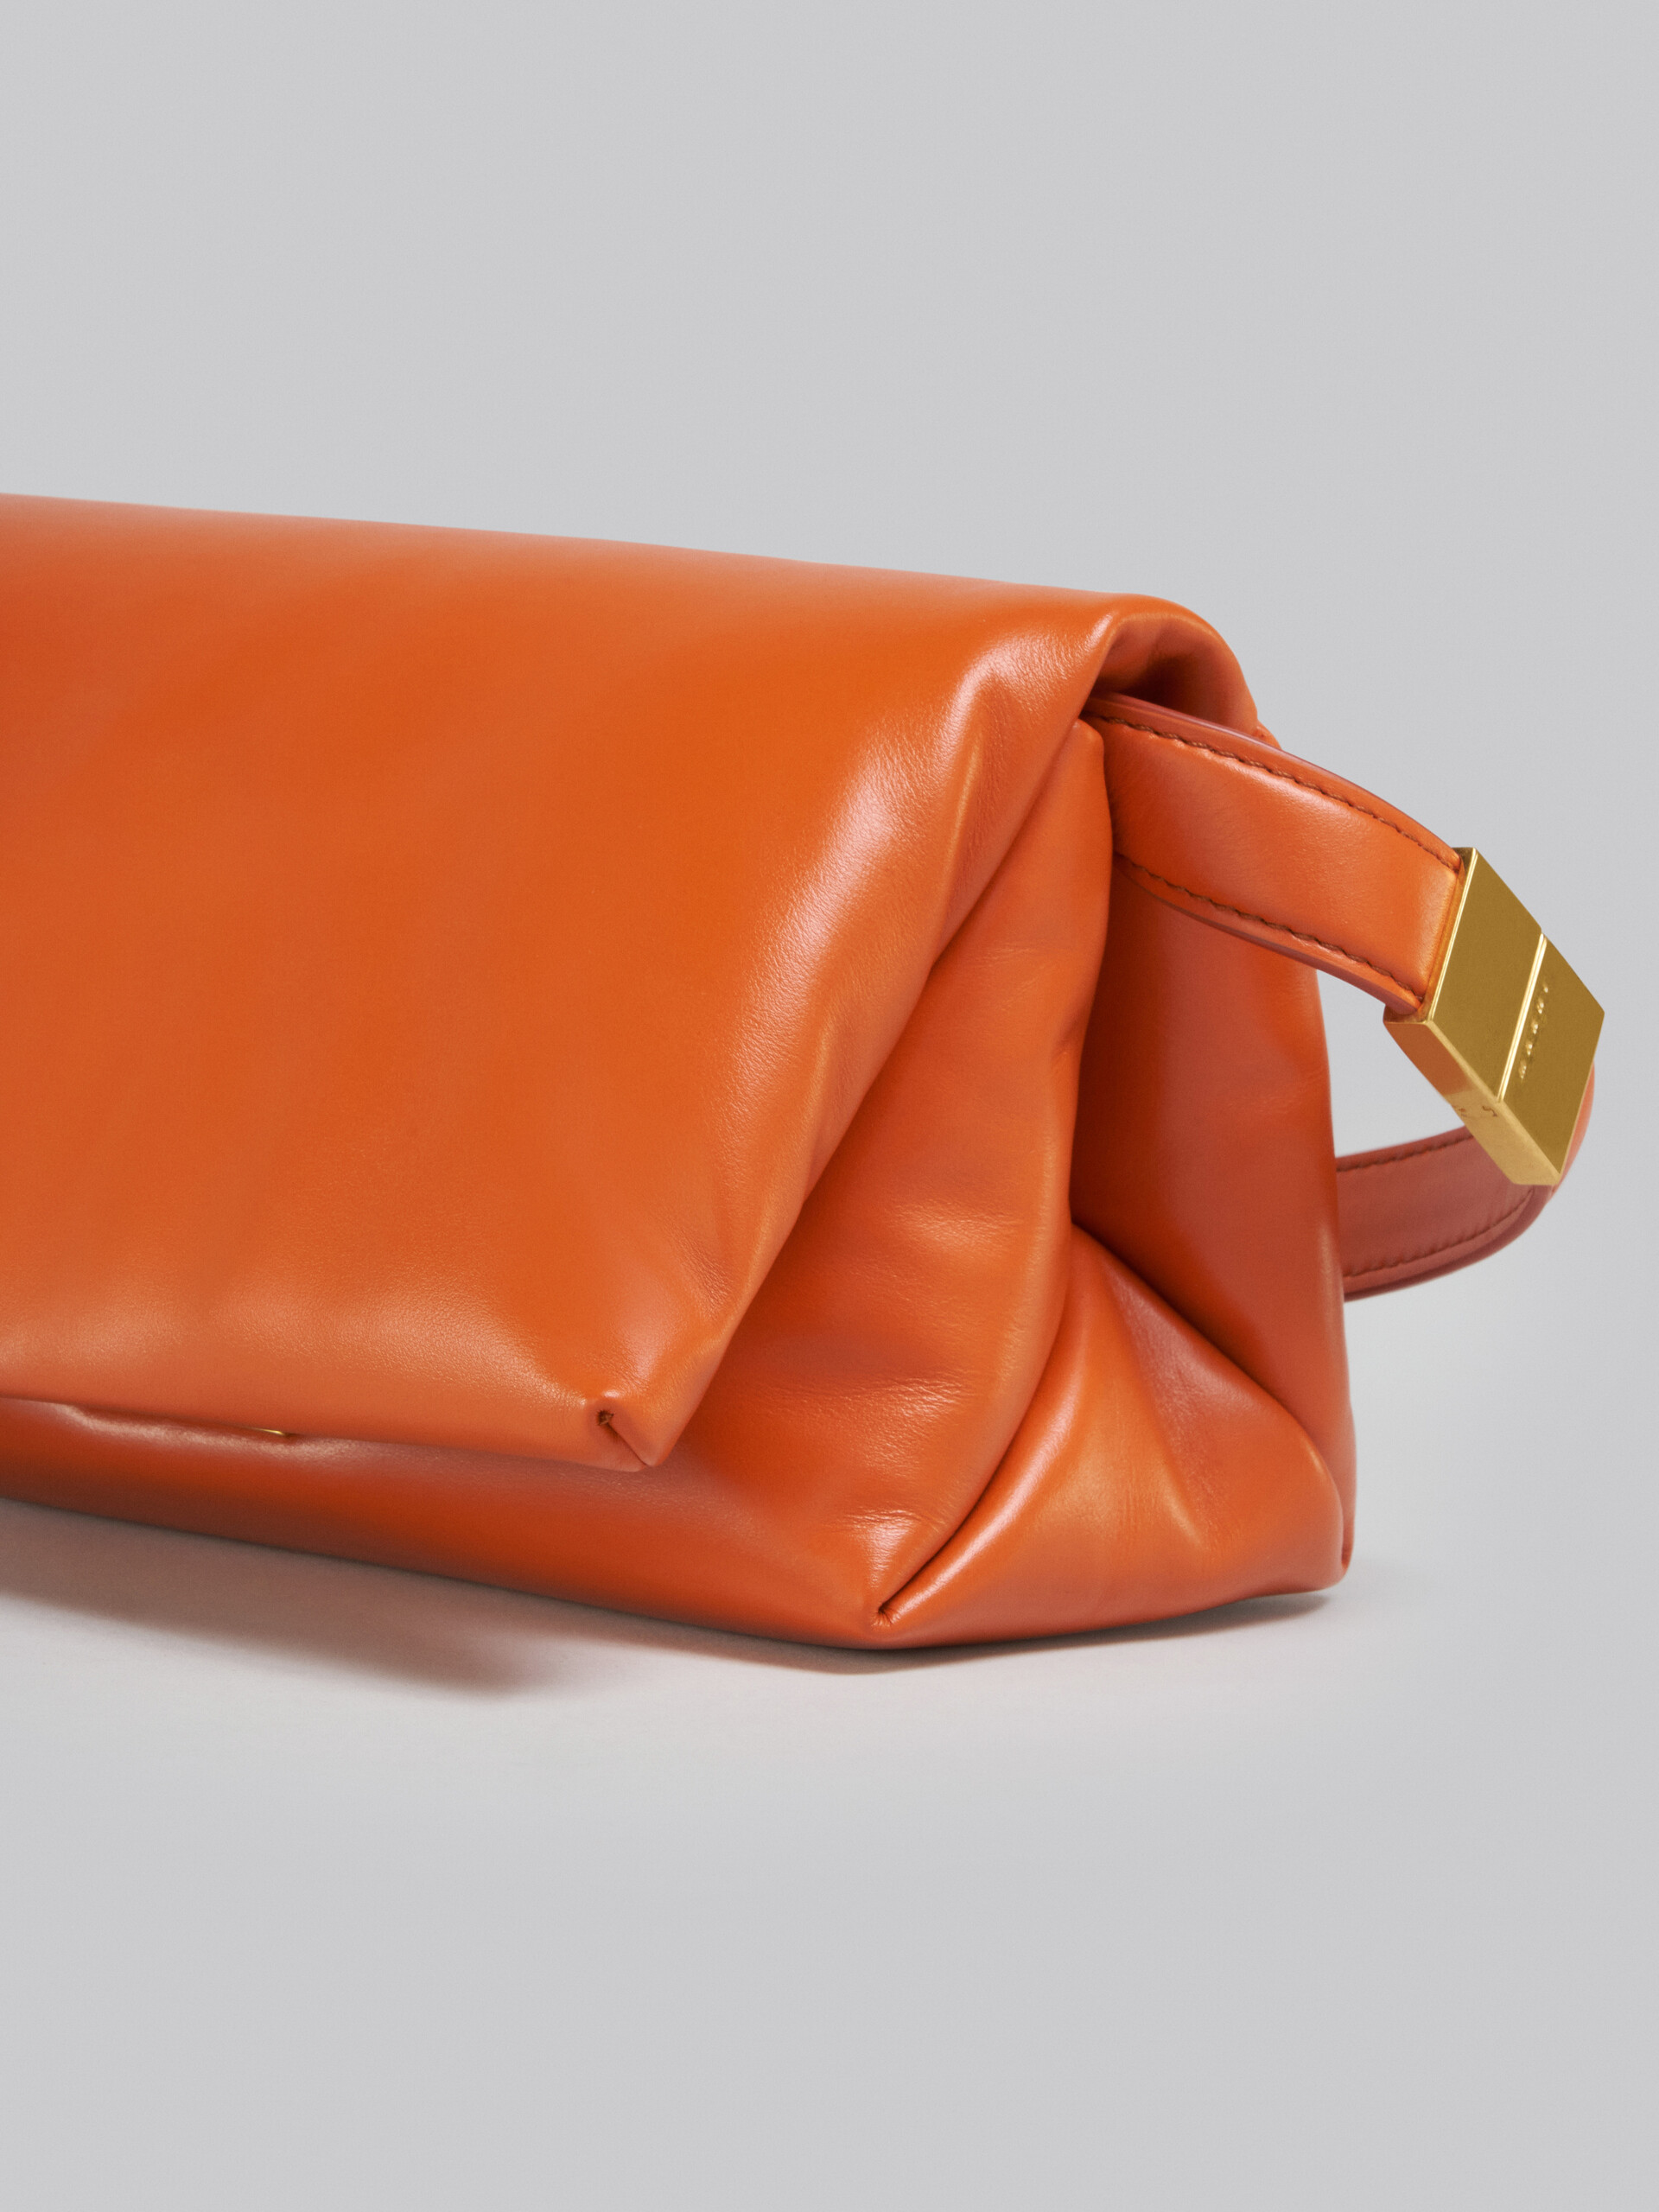 Small orange calsfkin Prisma bag - Shoulder Bag - Image 5